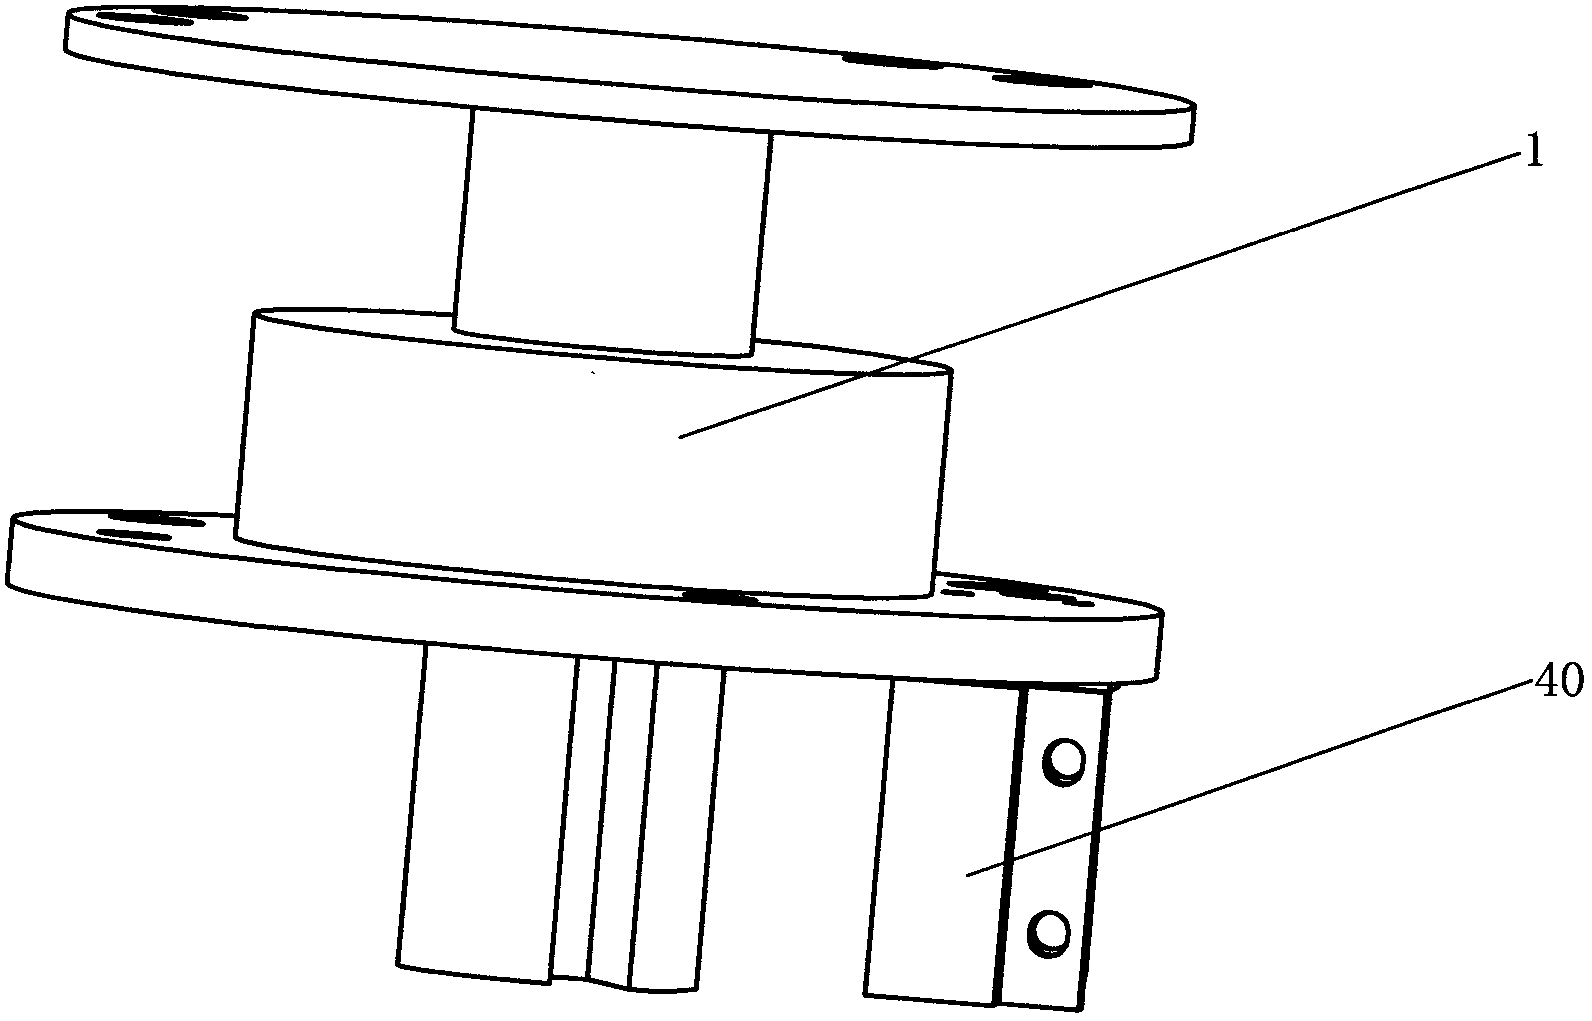 Angle sensor device for bar bending machine